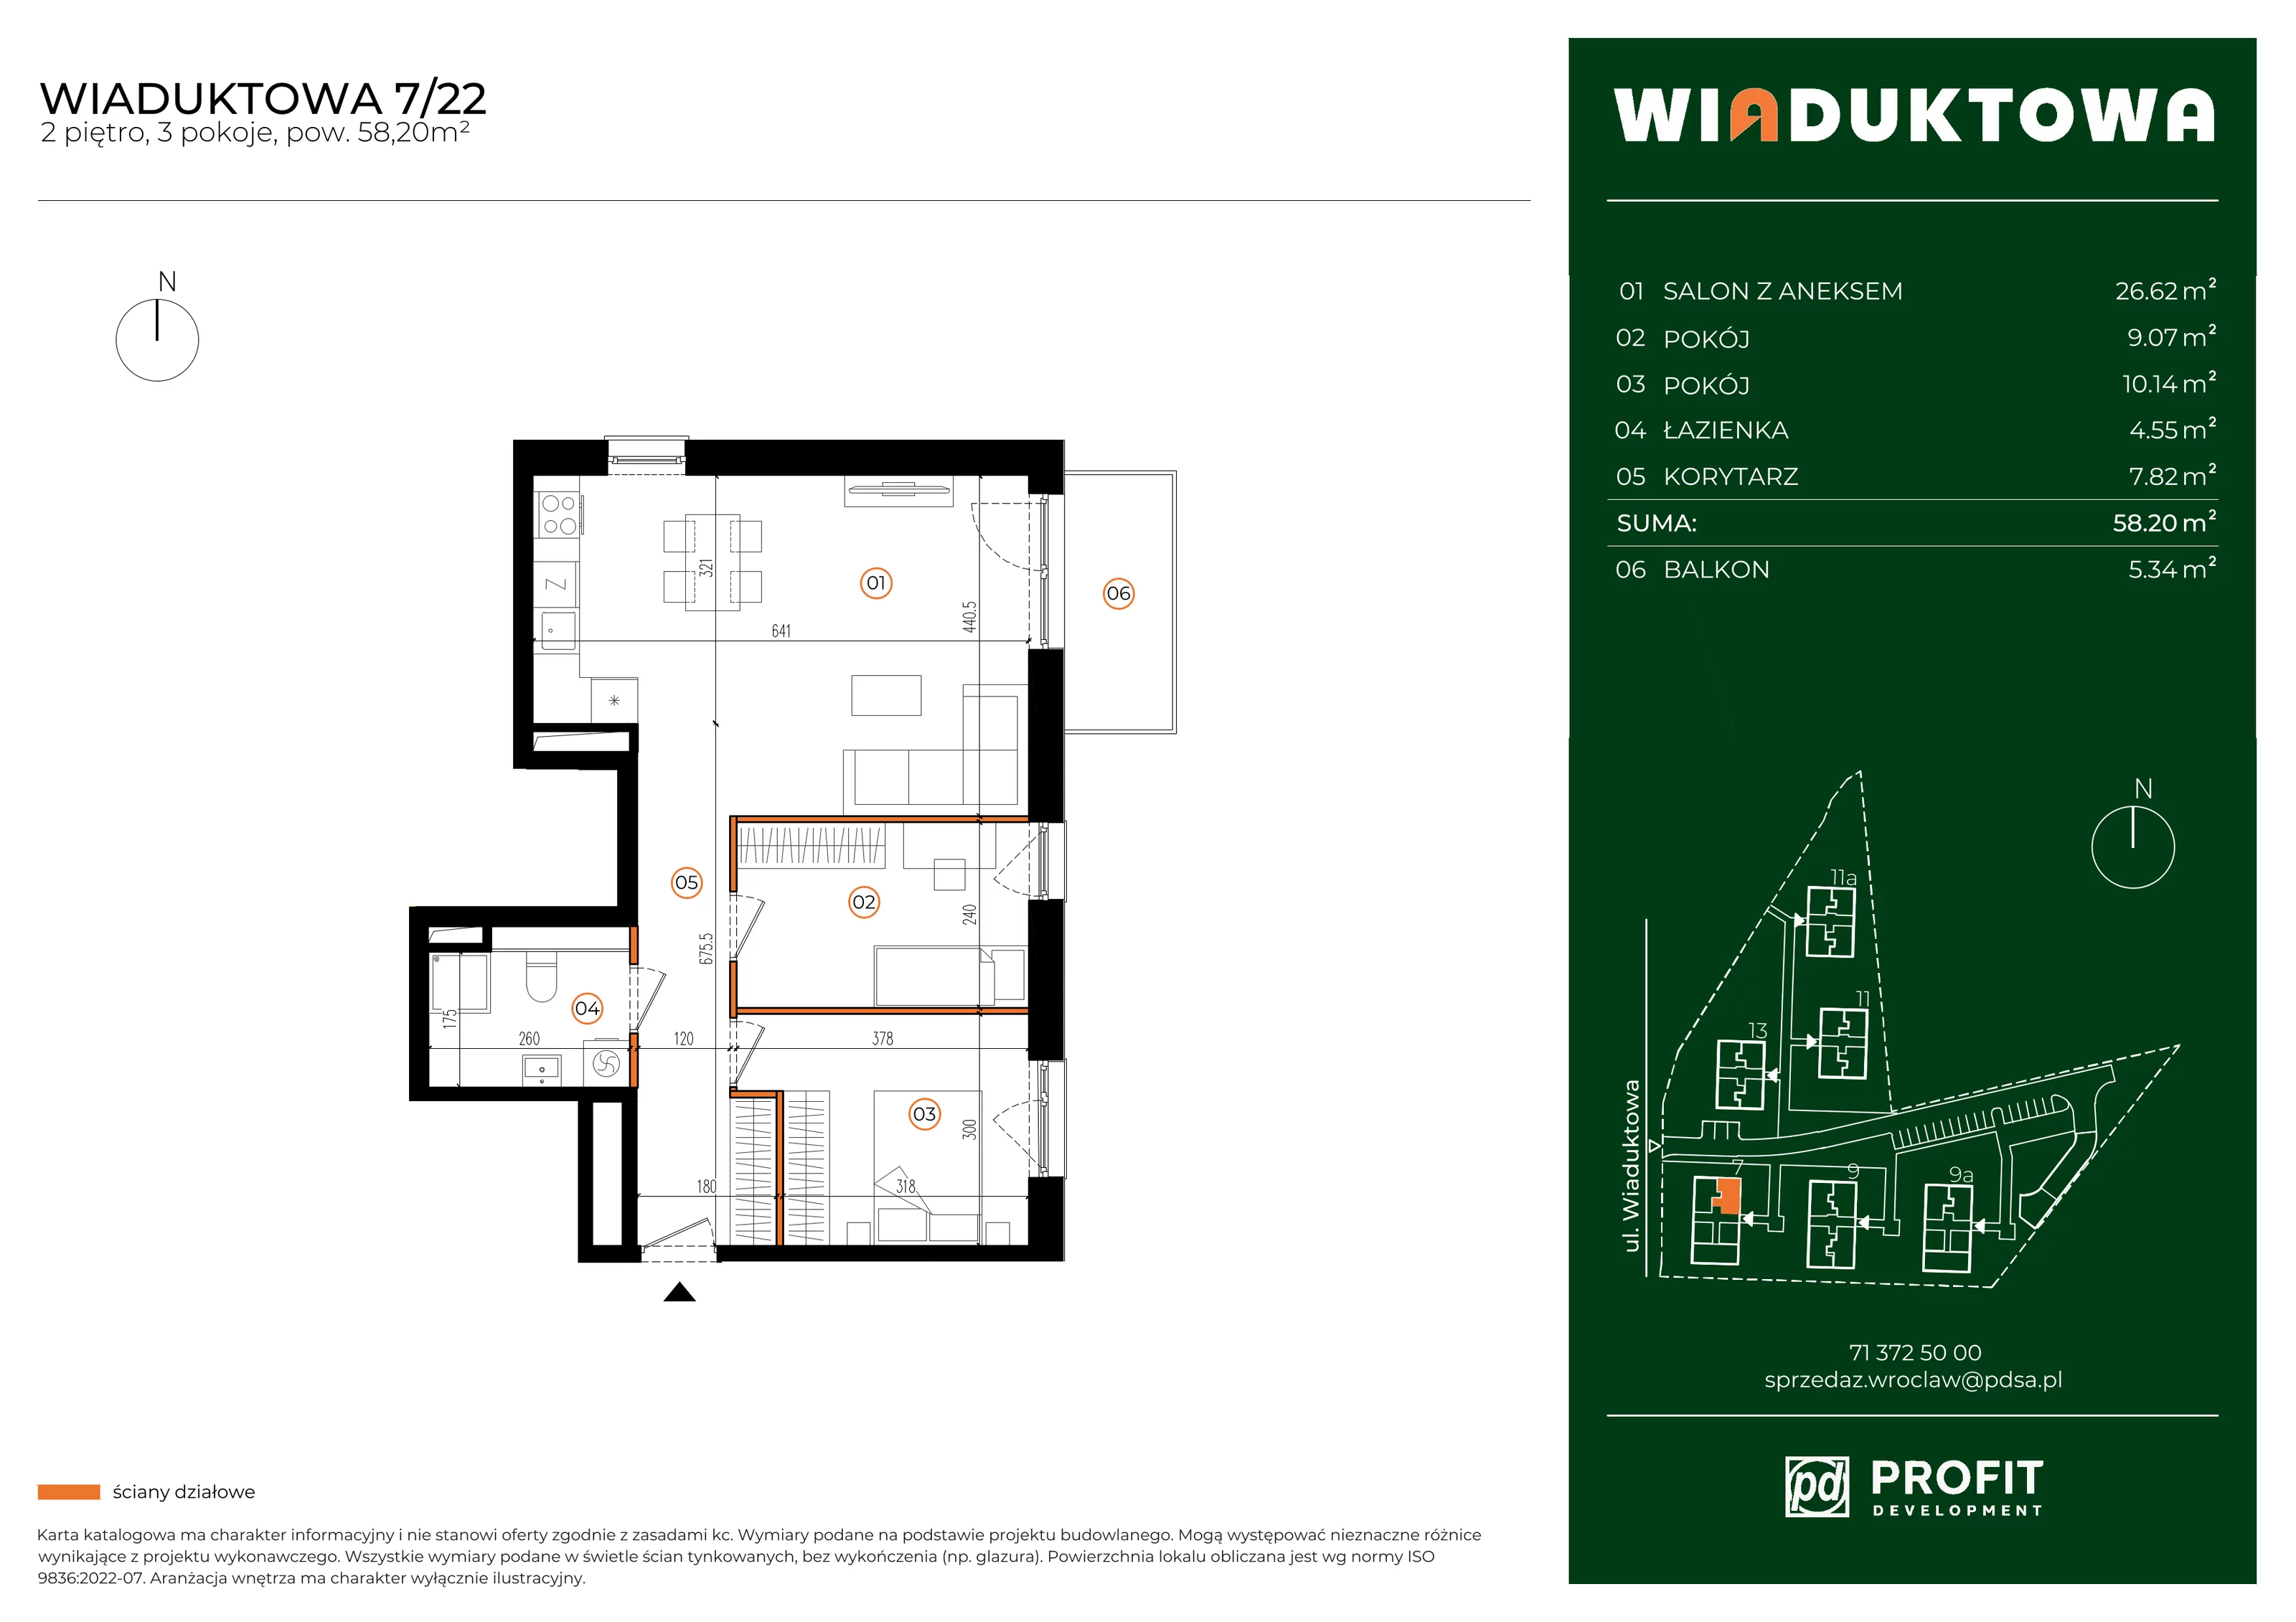 Mieszkanie 58,20 m², piętro 2, oferta nr WI/7/22, Wiaduktowa, Wrocław, Krzyki-Partynice, Krzyki, ul. Wiaduktowa